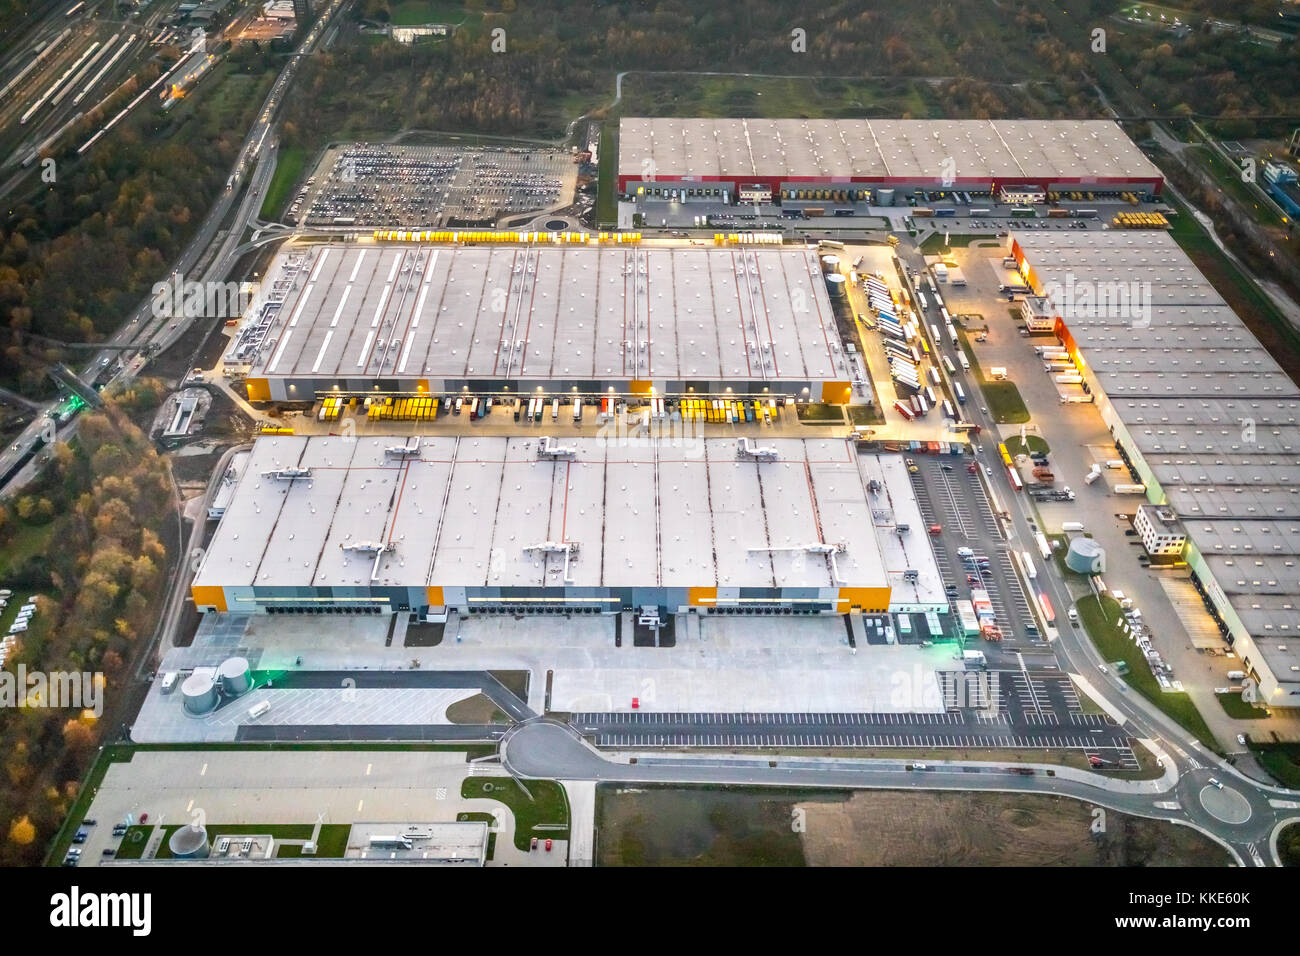 Das Amazon Logistikzentrum 'TM2' in Dortmund befindet sich auf dem Gelände  der ehemaligen Westfalenhütte, Goldbeck-Konstruktion, Dortmund, Ruhr,  Nordrhein-Wes Stockfotografie - Alamy